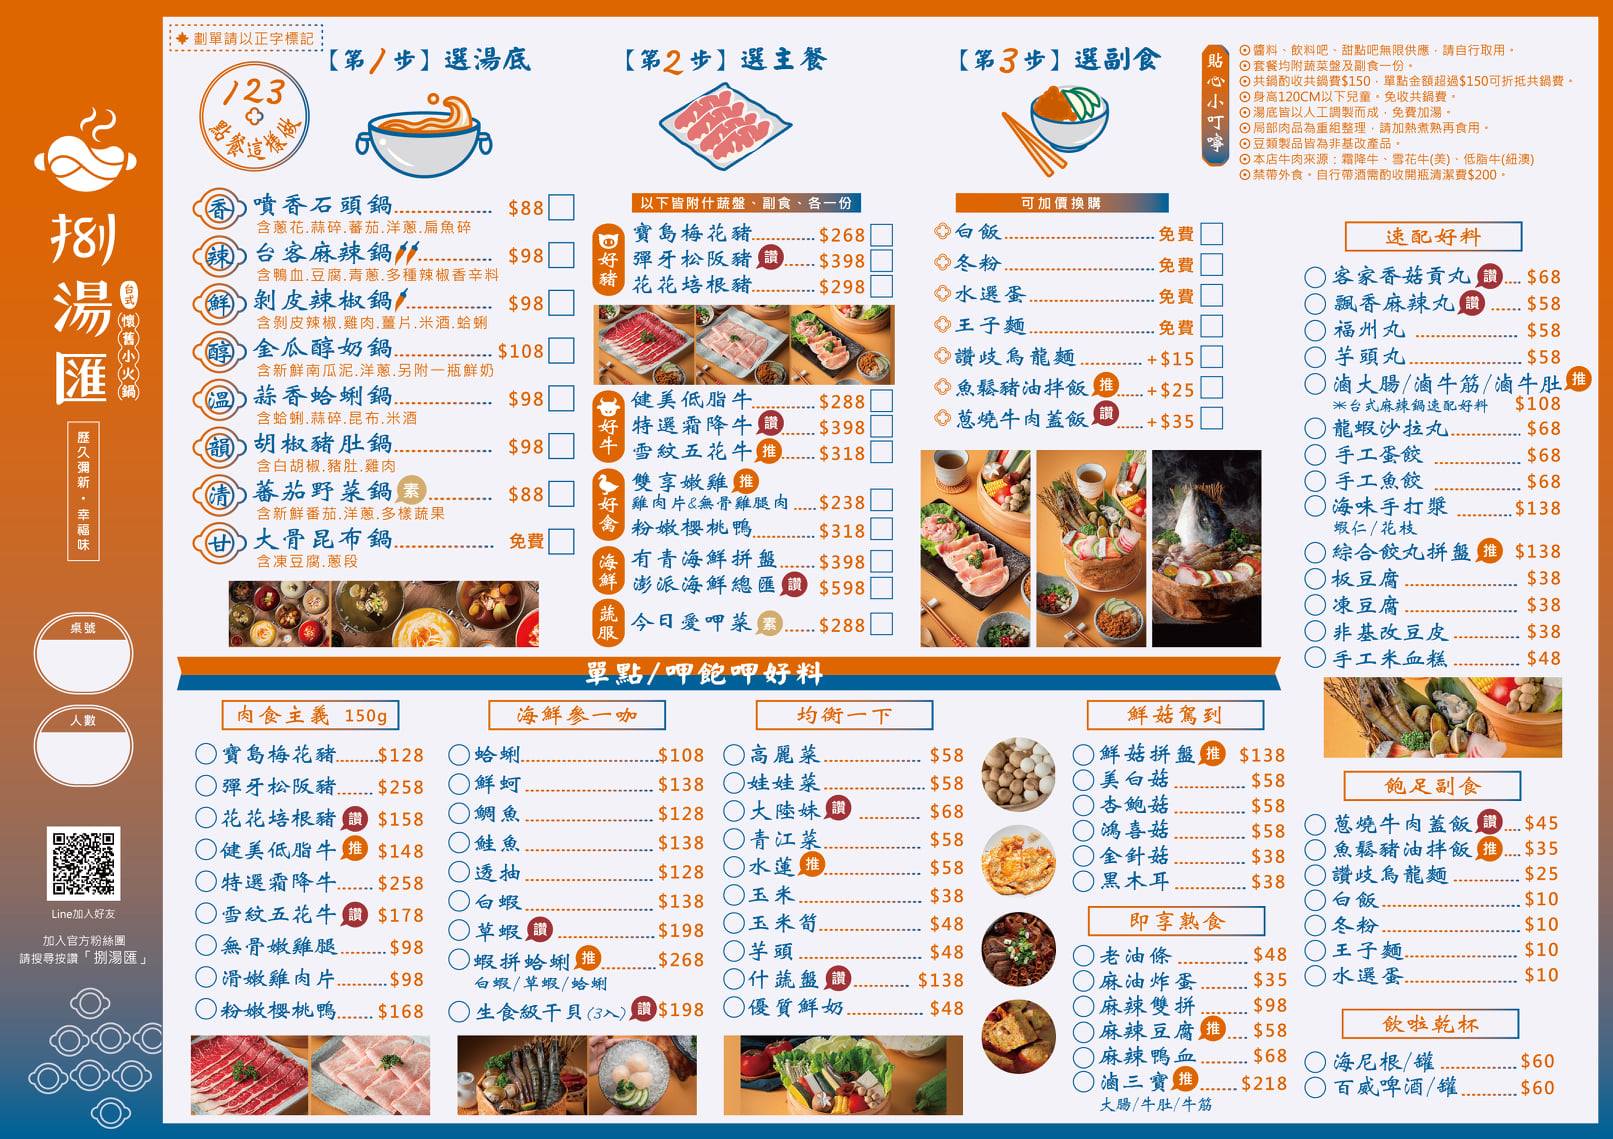 捌湯匯台式懷舊小火鍋 菜單 menu